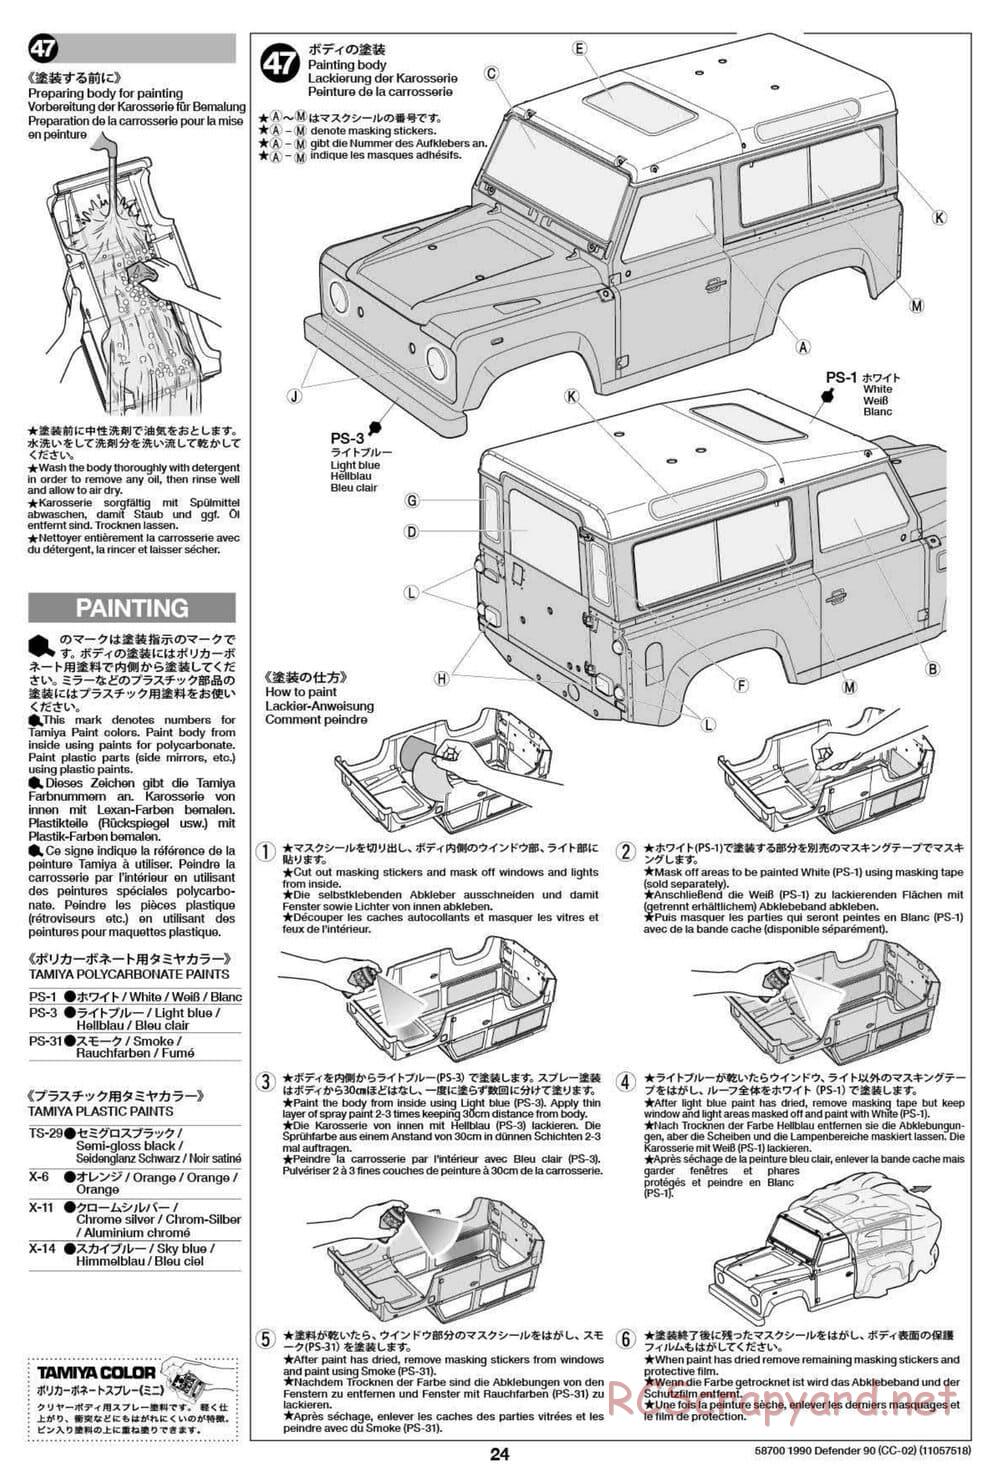 Tamiya - 1990 Land Rover Defender 90 - CC-02 Chassis - Manual - Page 24